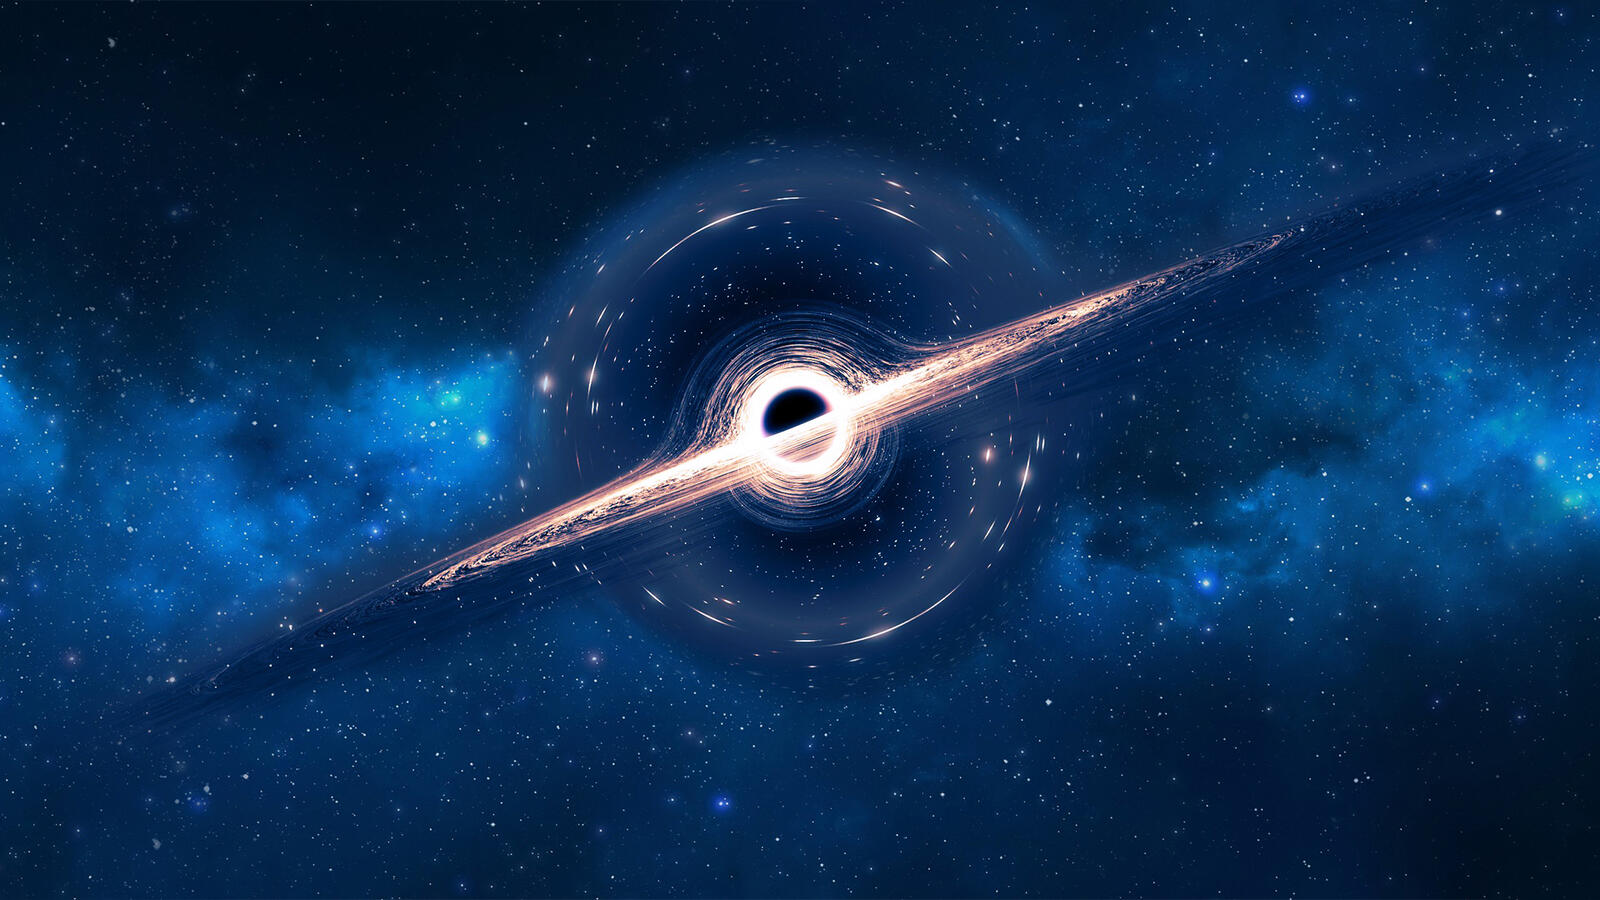 Обои космос черная дыра Digital Universe на рабочий стол